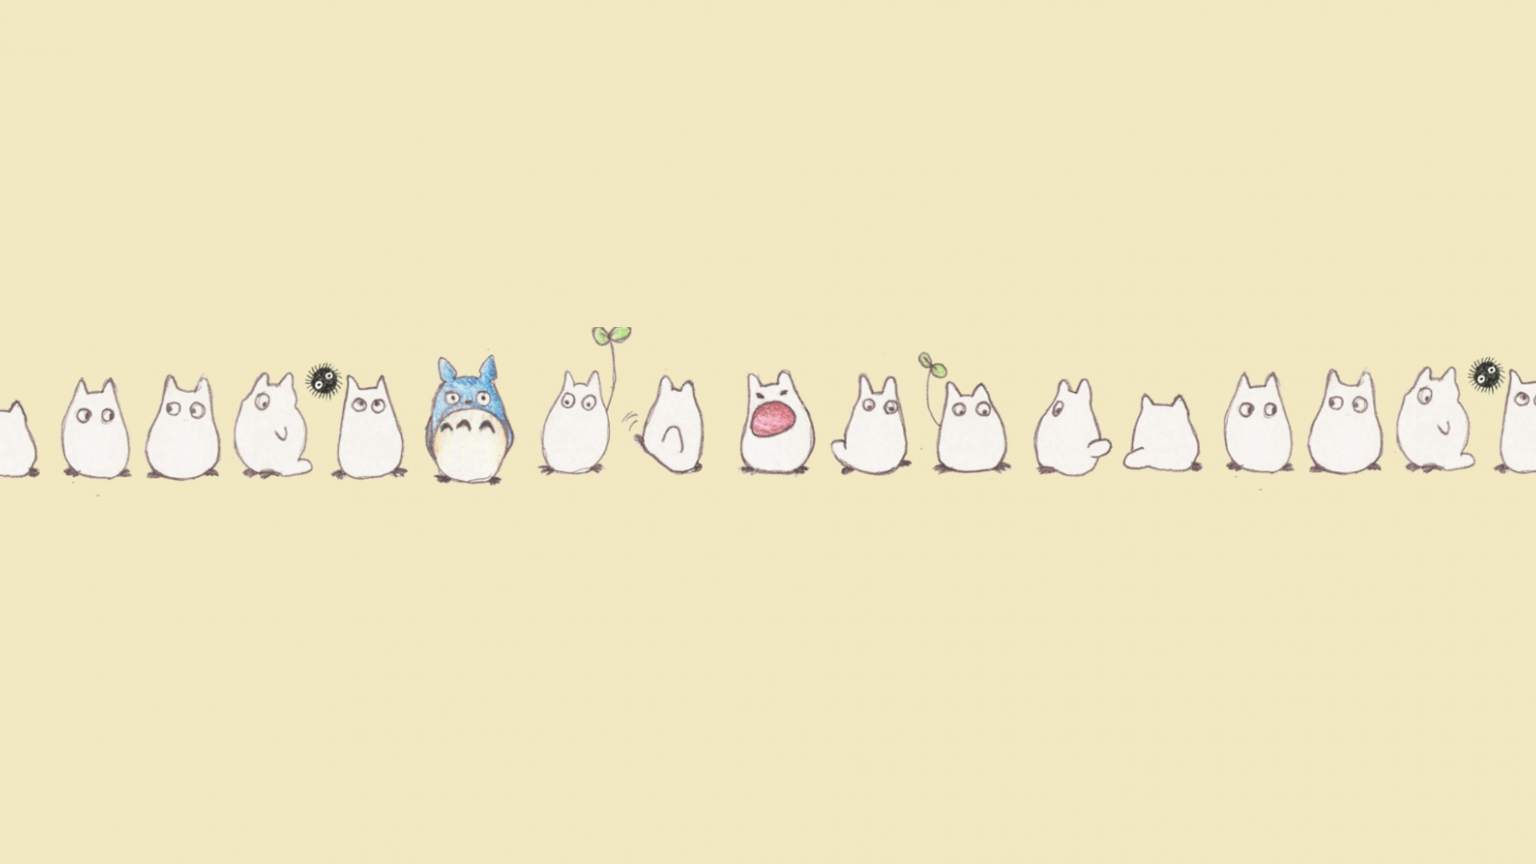 Free download Kawaii Totoro Desktop Wallpaper Cute Wallpaper [1920x893] for your Desktop, Mobile & Tablet. Explore Pink Totoro Wallpaper. My Neighbor Totoro Wallpaper, Studio Ghibli Wallpaper